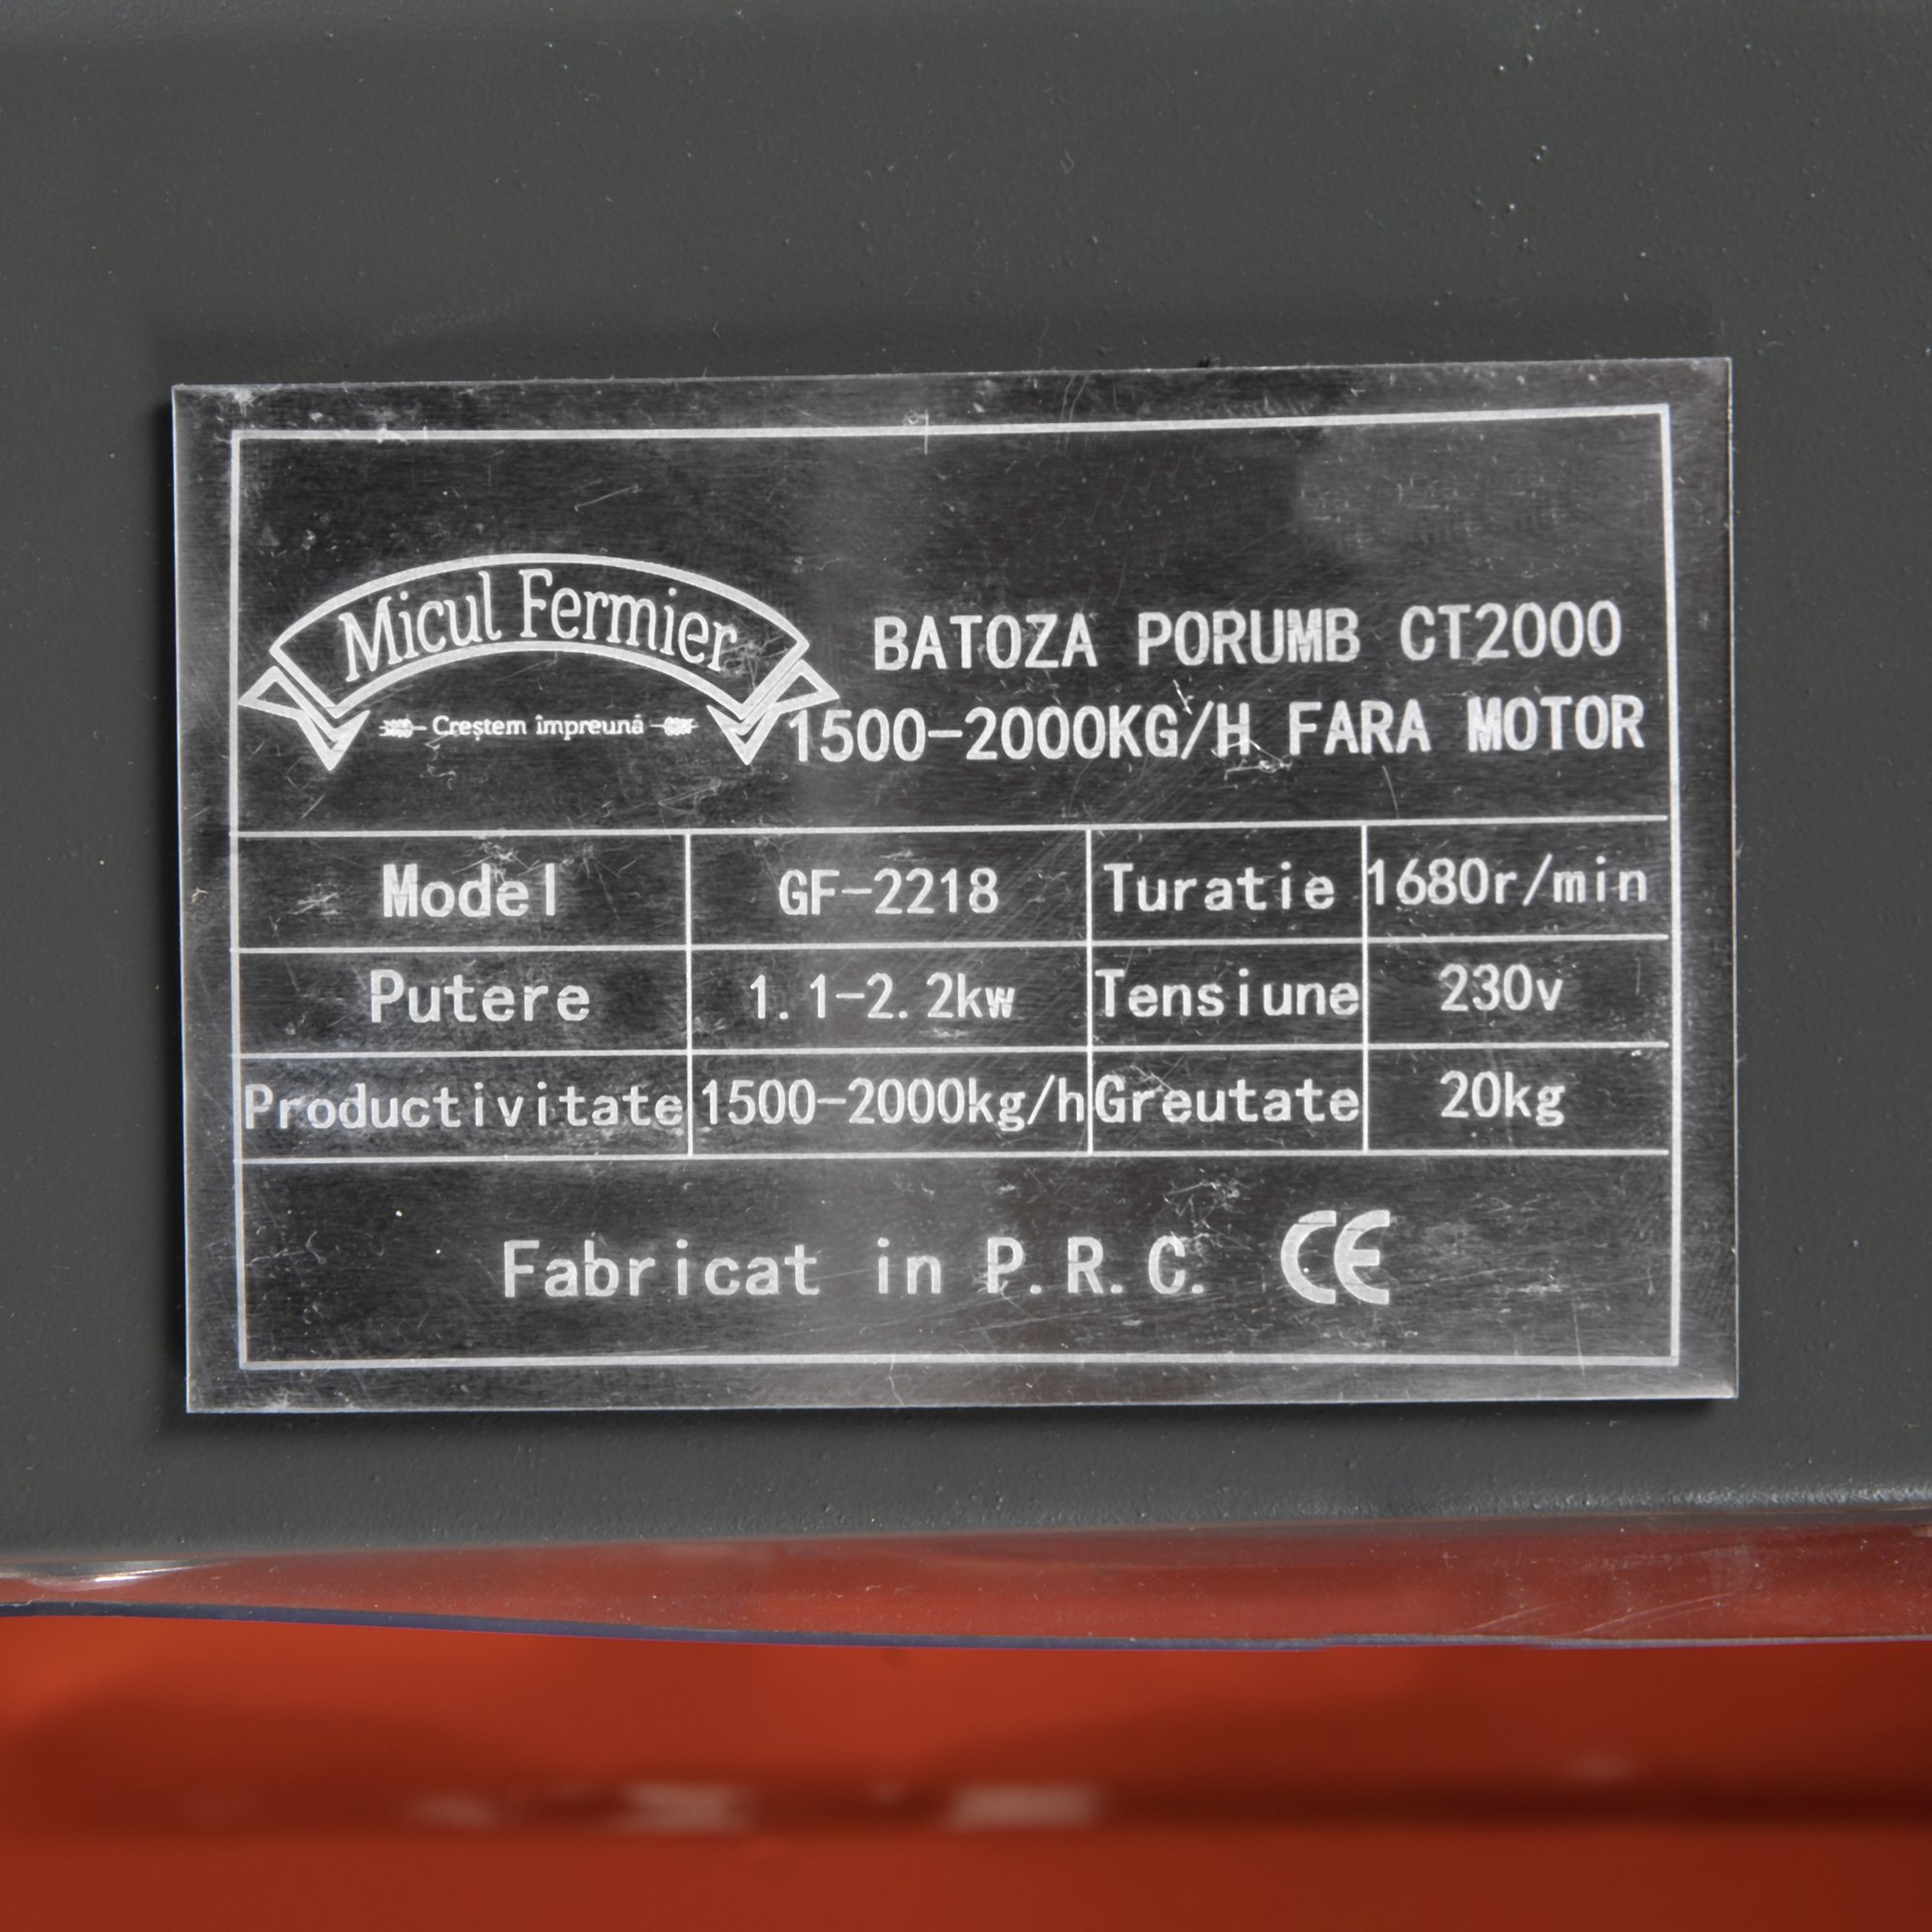 Batoza de porumb CT2000 1500-2000kg/h fara motor